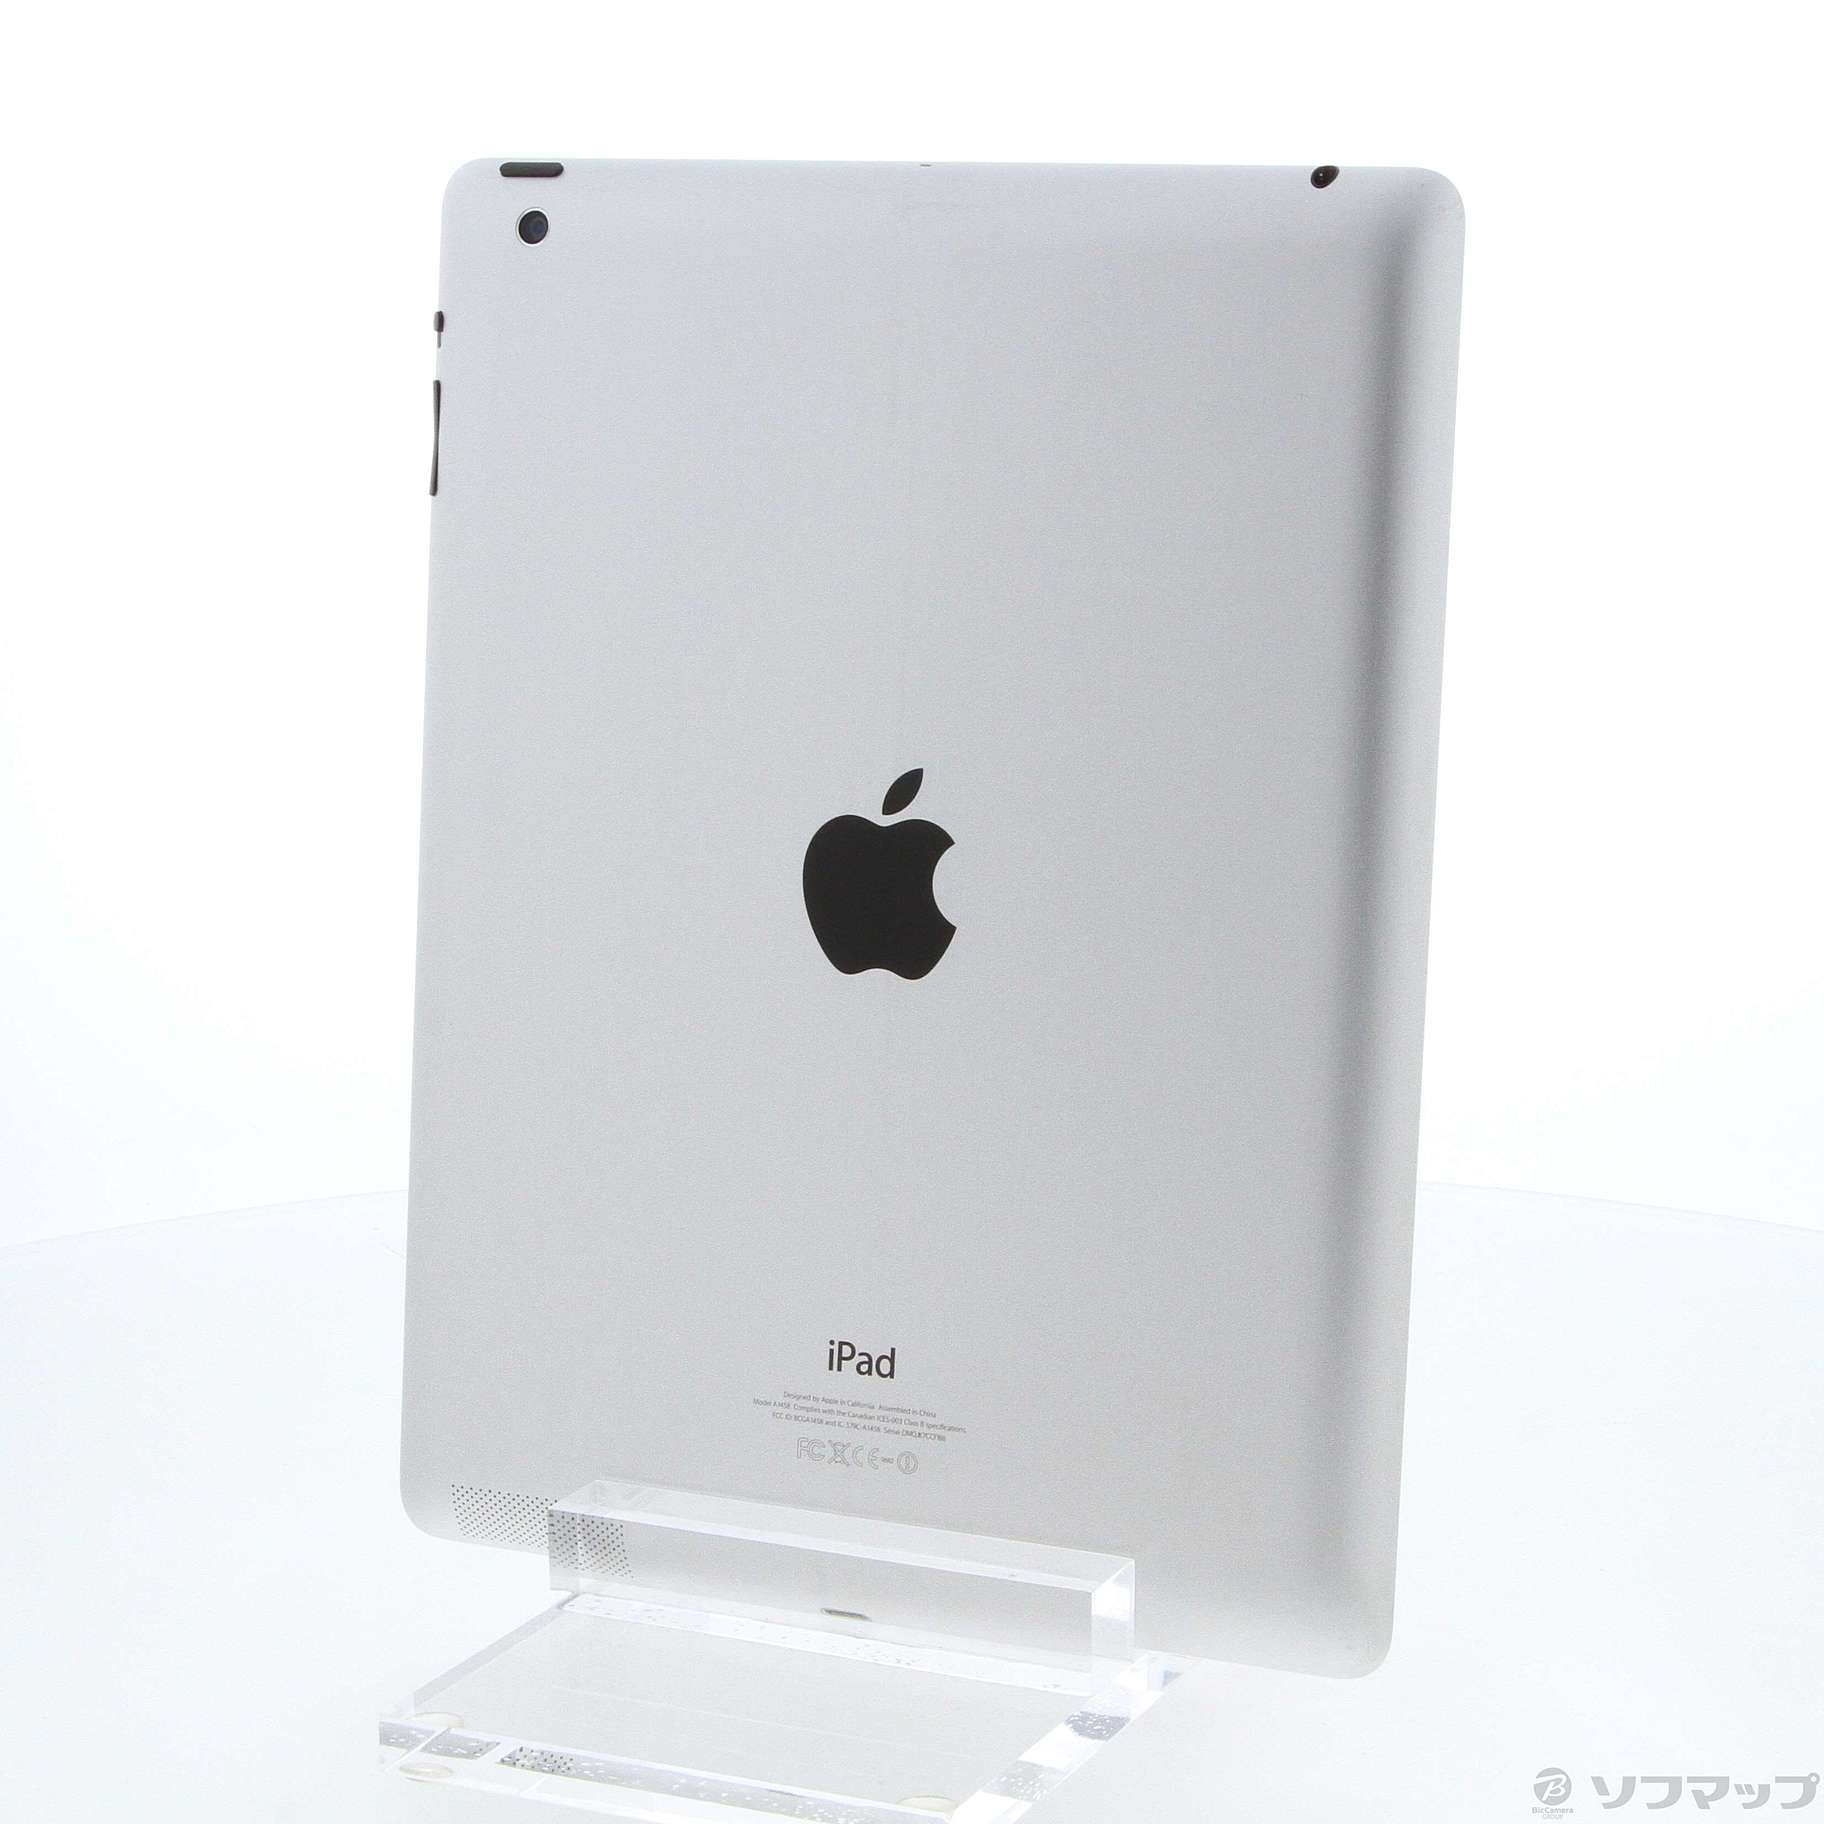 Apple ipad 32G Wifi (MD511J/A)第4世代PC/タブレット